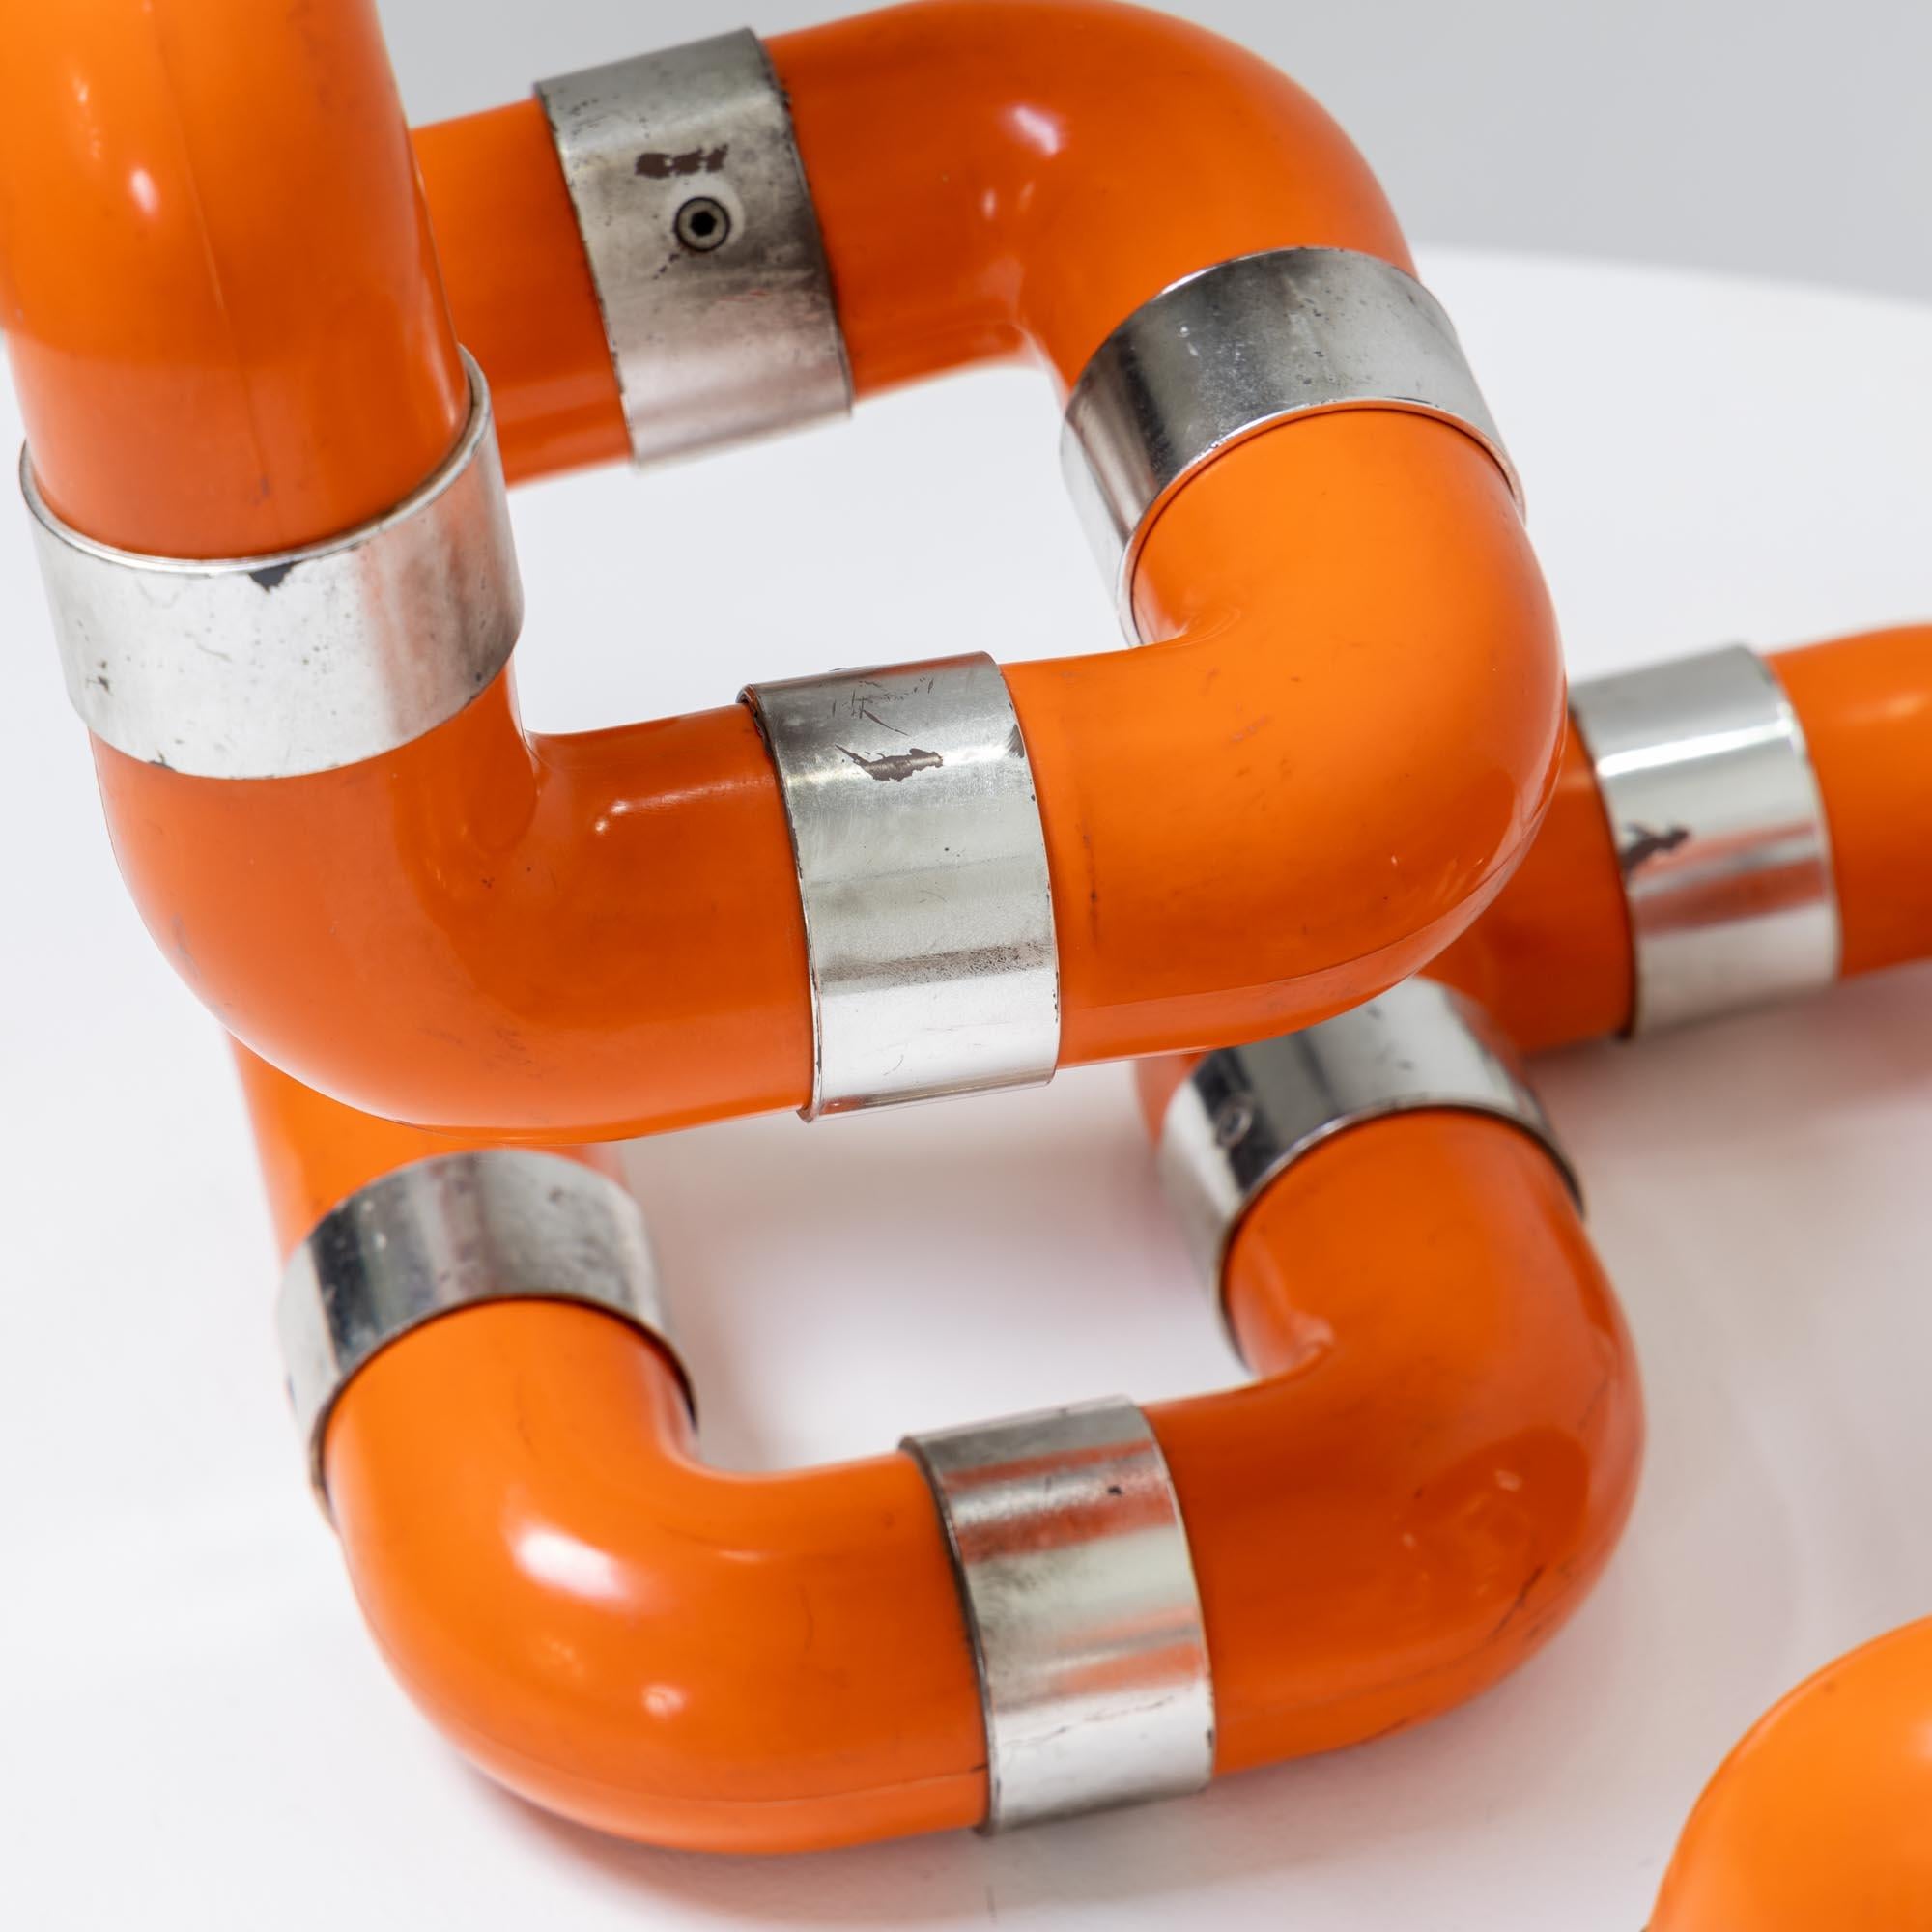 Zwei Rombo-Tischleuchten von Gaetano Missaglia aus L-förmigen orangefarbenen Kunststoffrohren mit verchromten Anschlüssen und je einer Fassung. Wir übernehmen keine Haftung oder Gewährleistung für die Elektrifizierung.